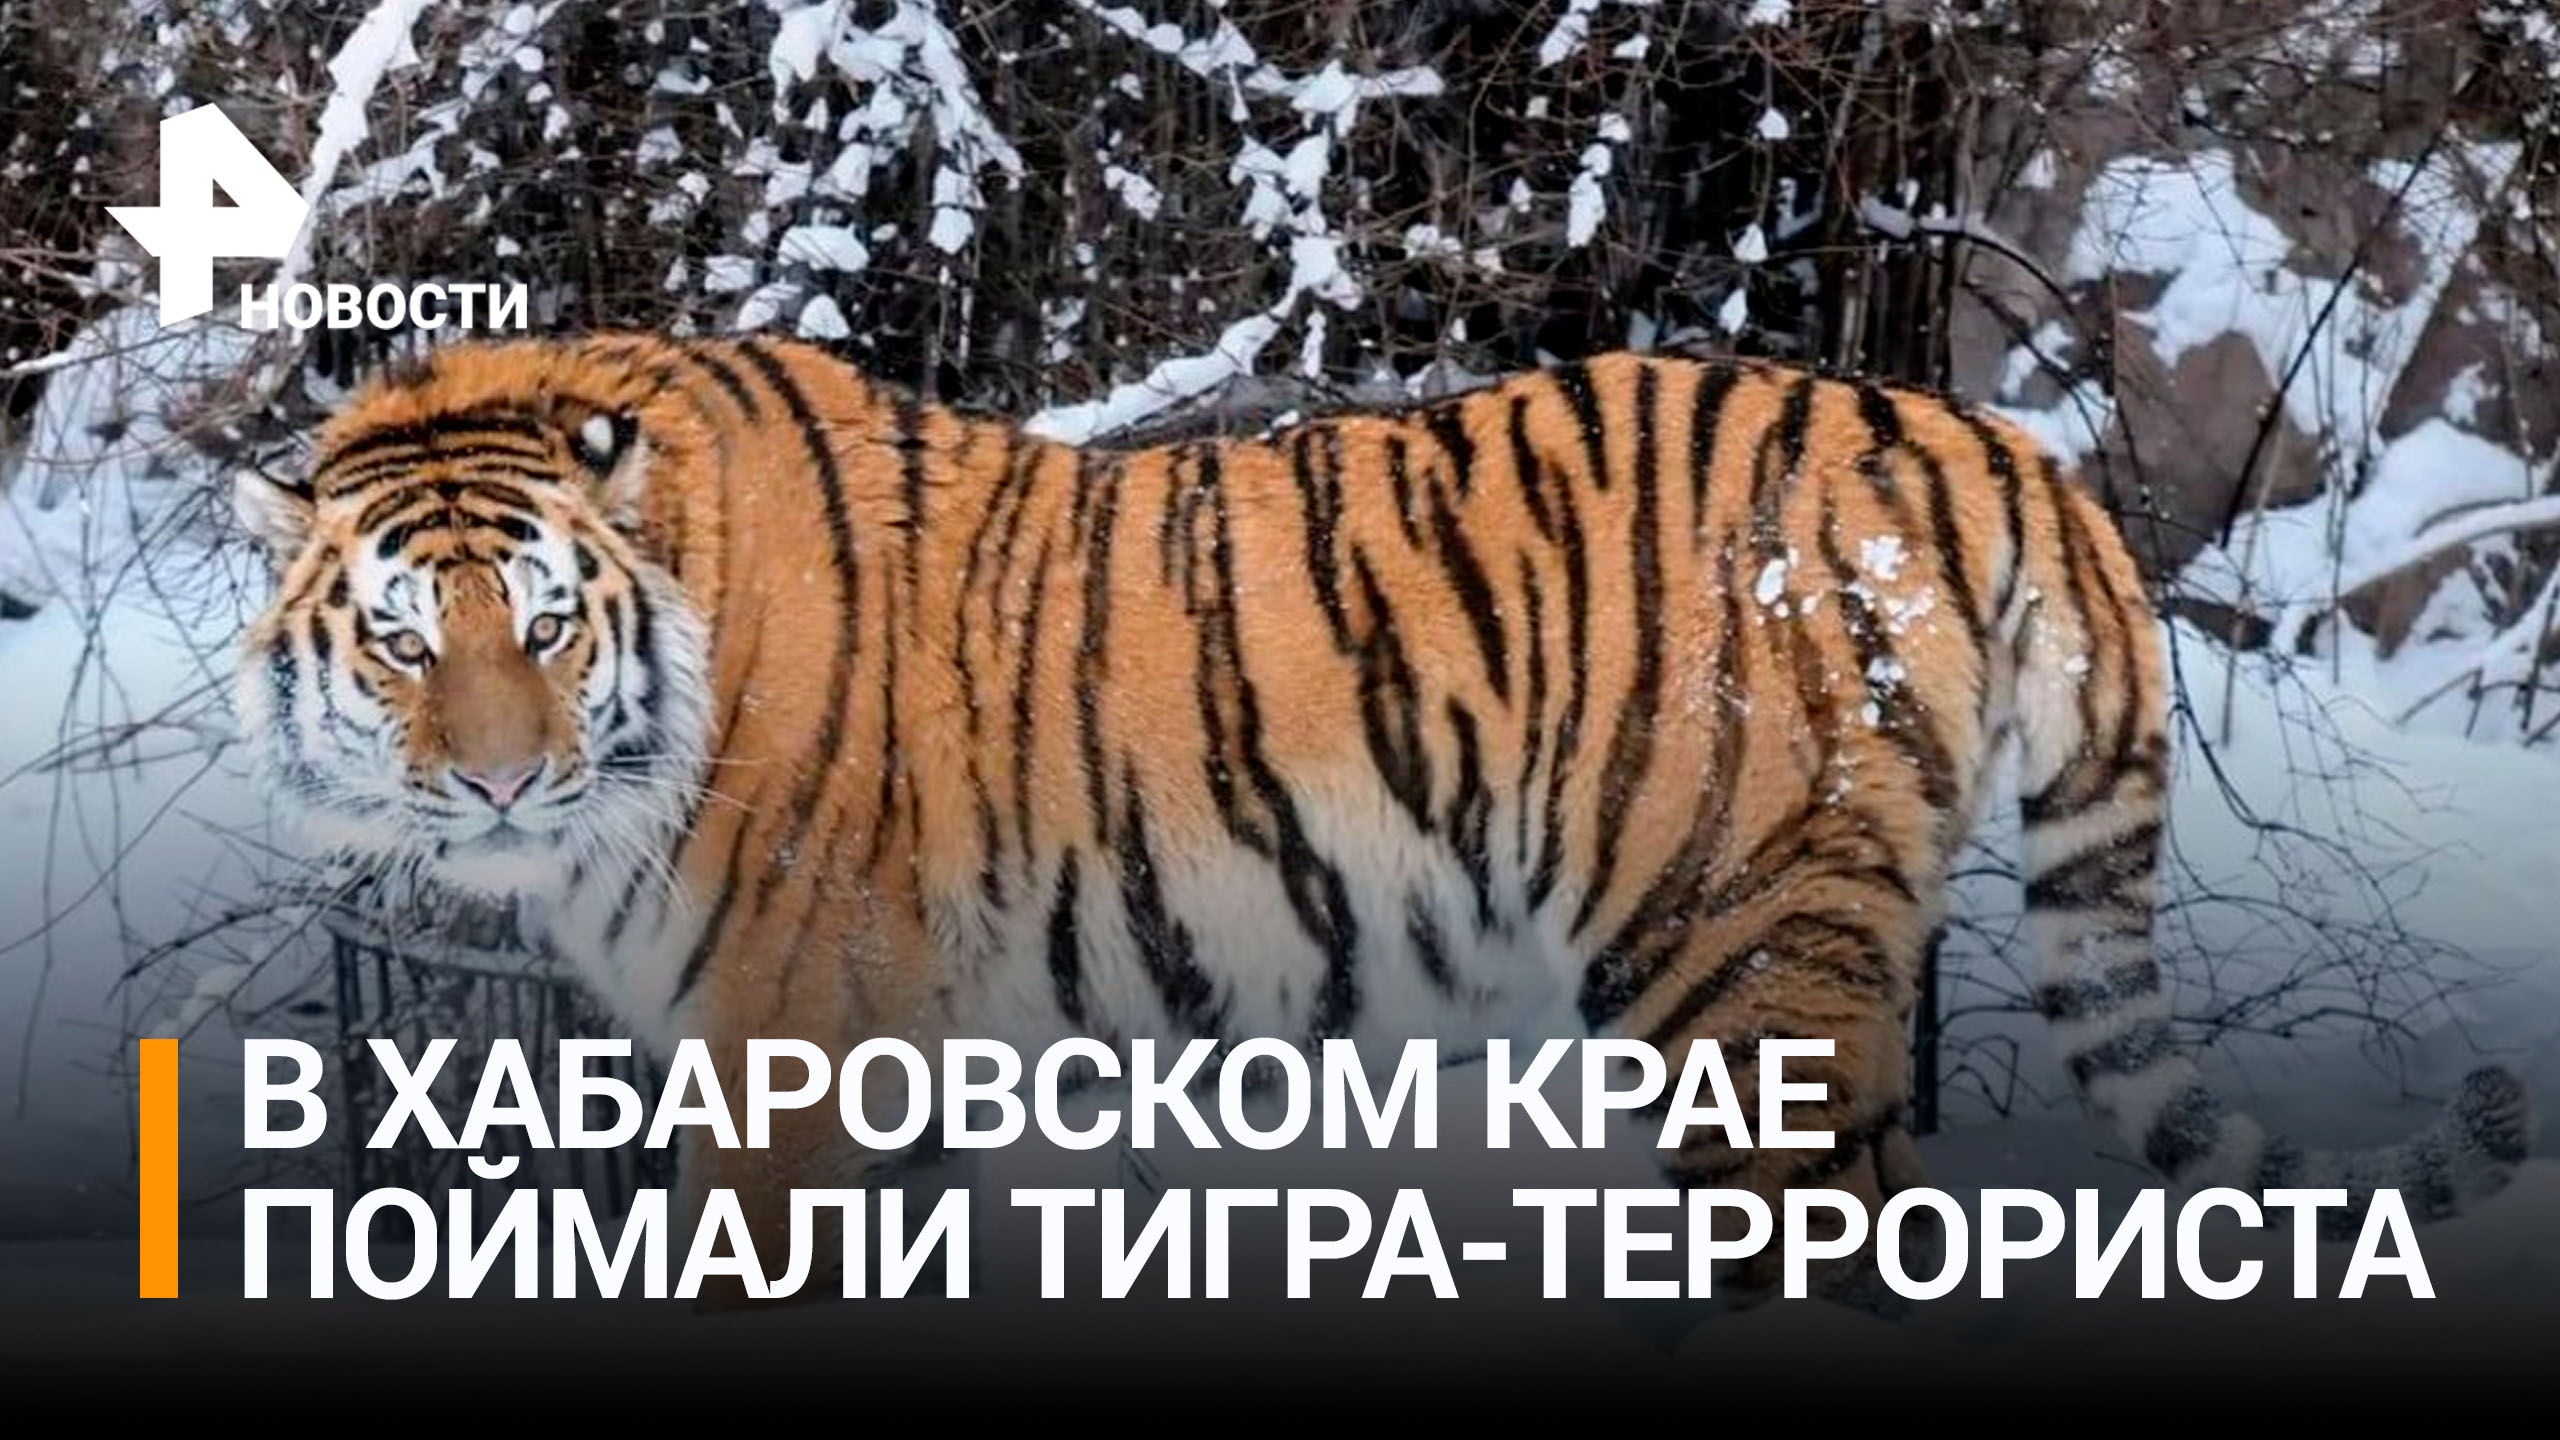 Пойман тигр, который растерзал больше десяти собак под Хабаровском / РЕН Новости